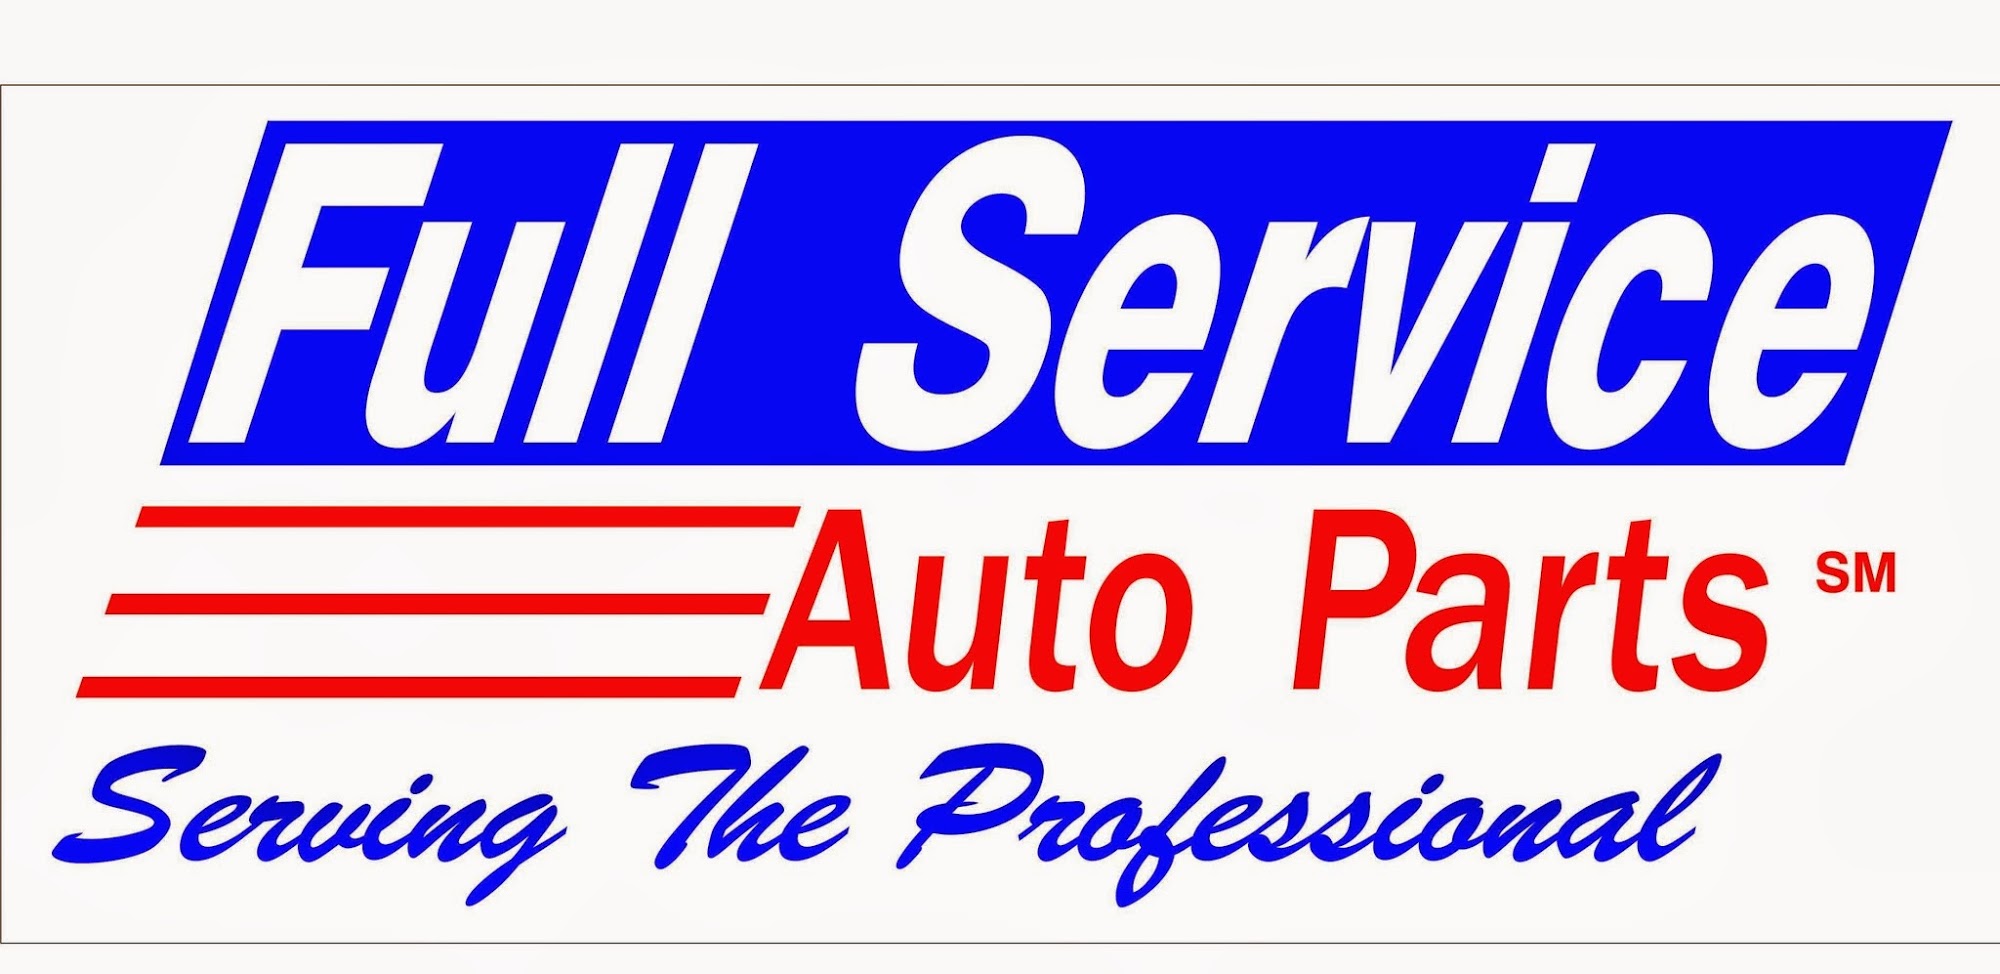 XL Parts-Full Service Auto Parts